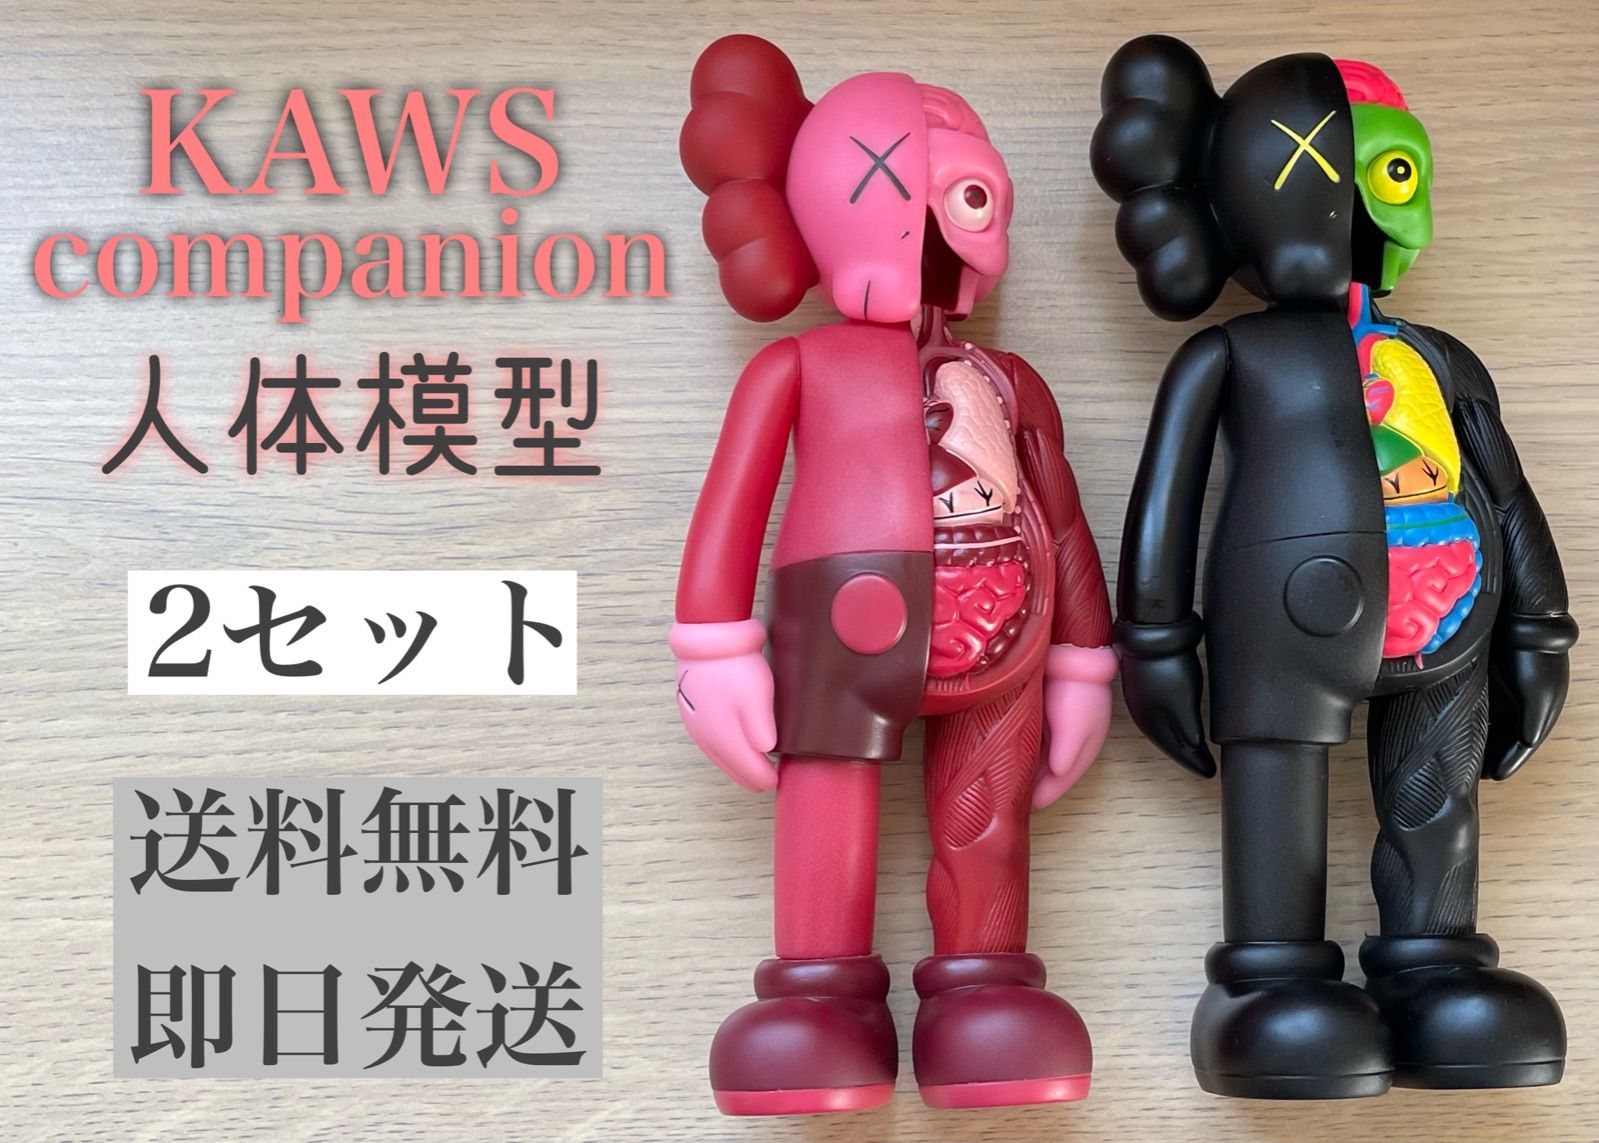 【入荷量】KAWS COMPANION 人体模型 コンパニオン OPEN EDITION FLYED BLUSH medicom toy メディコムトイ カウズ PINK キューブリック、ベアブリック